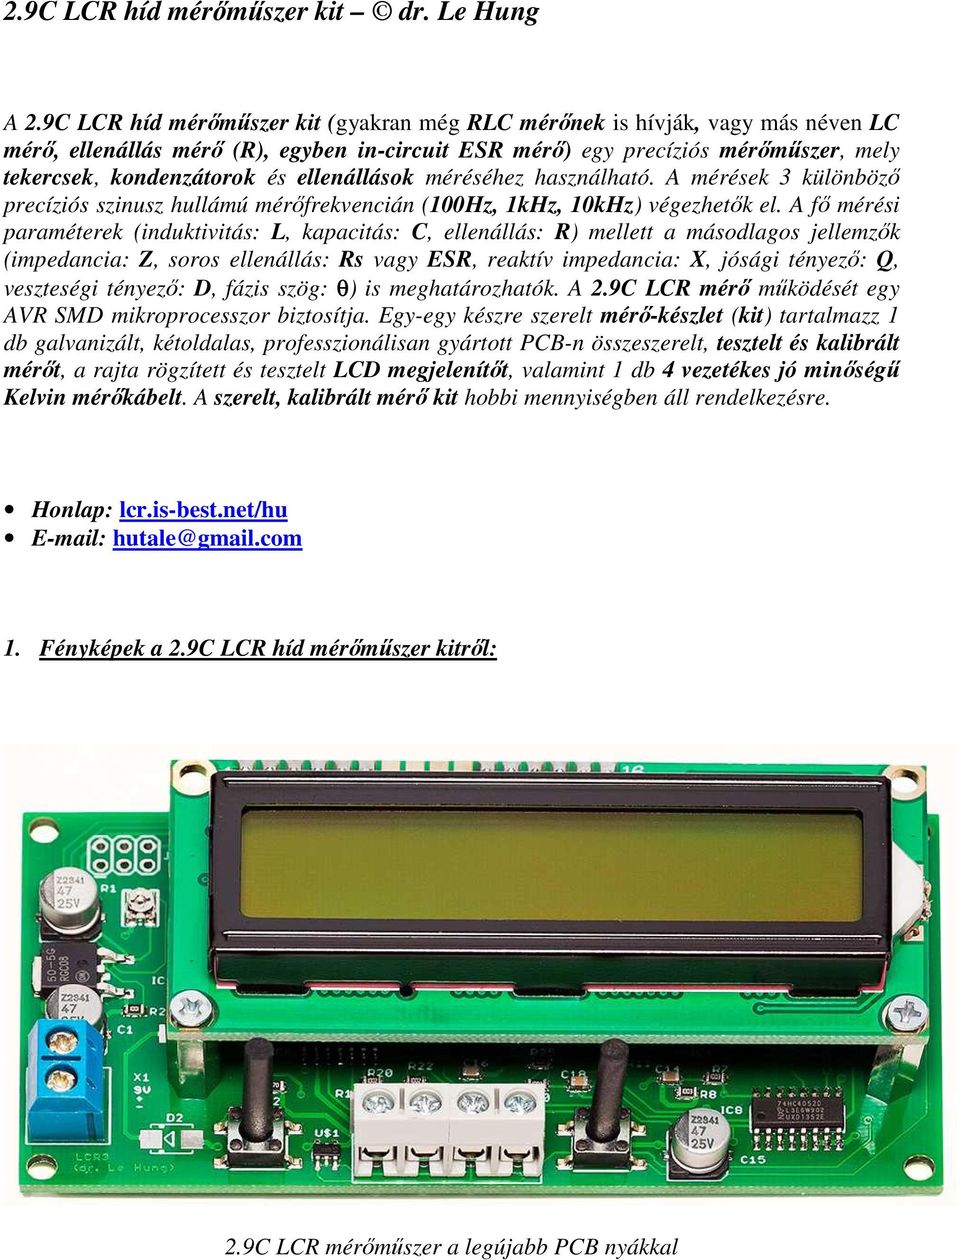 2.9C LCR híd mérőműszer kit dr. Le Hung - PDF Ingyenes letöltés